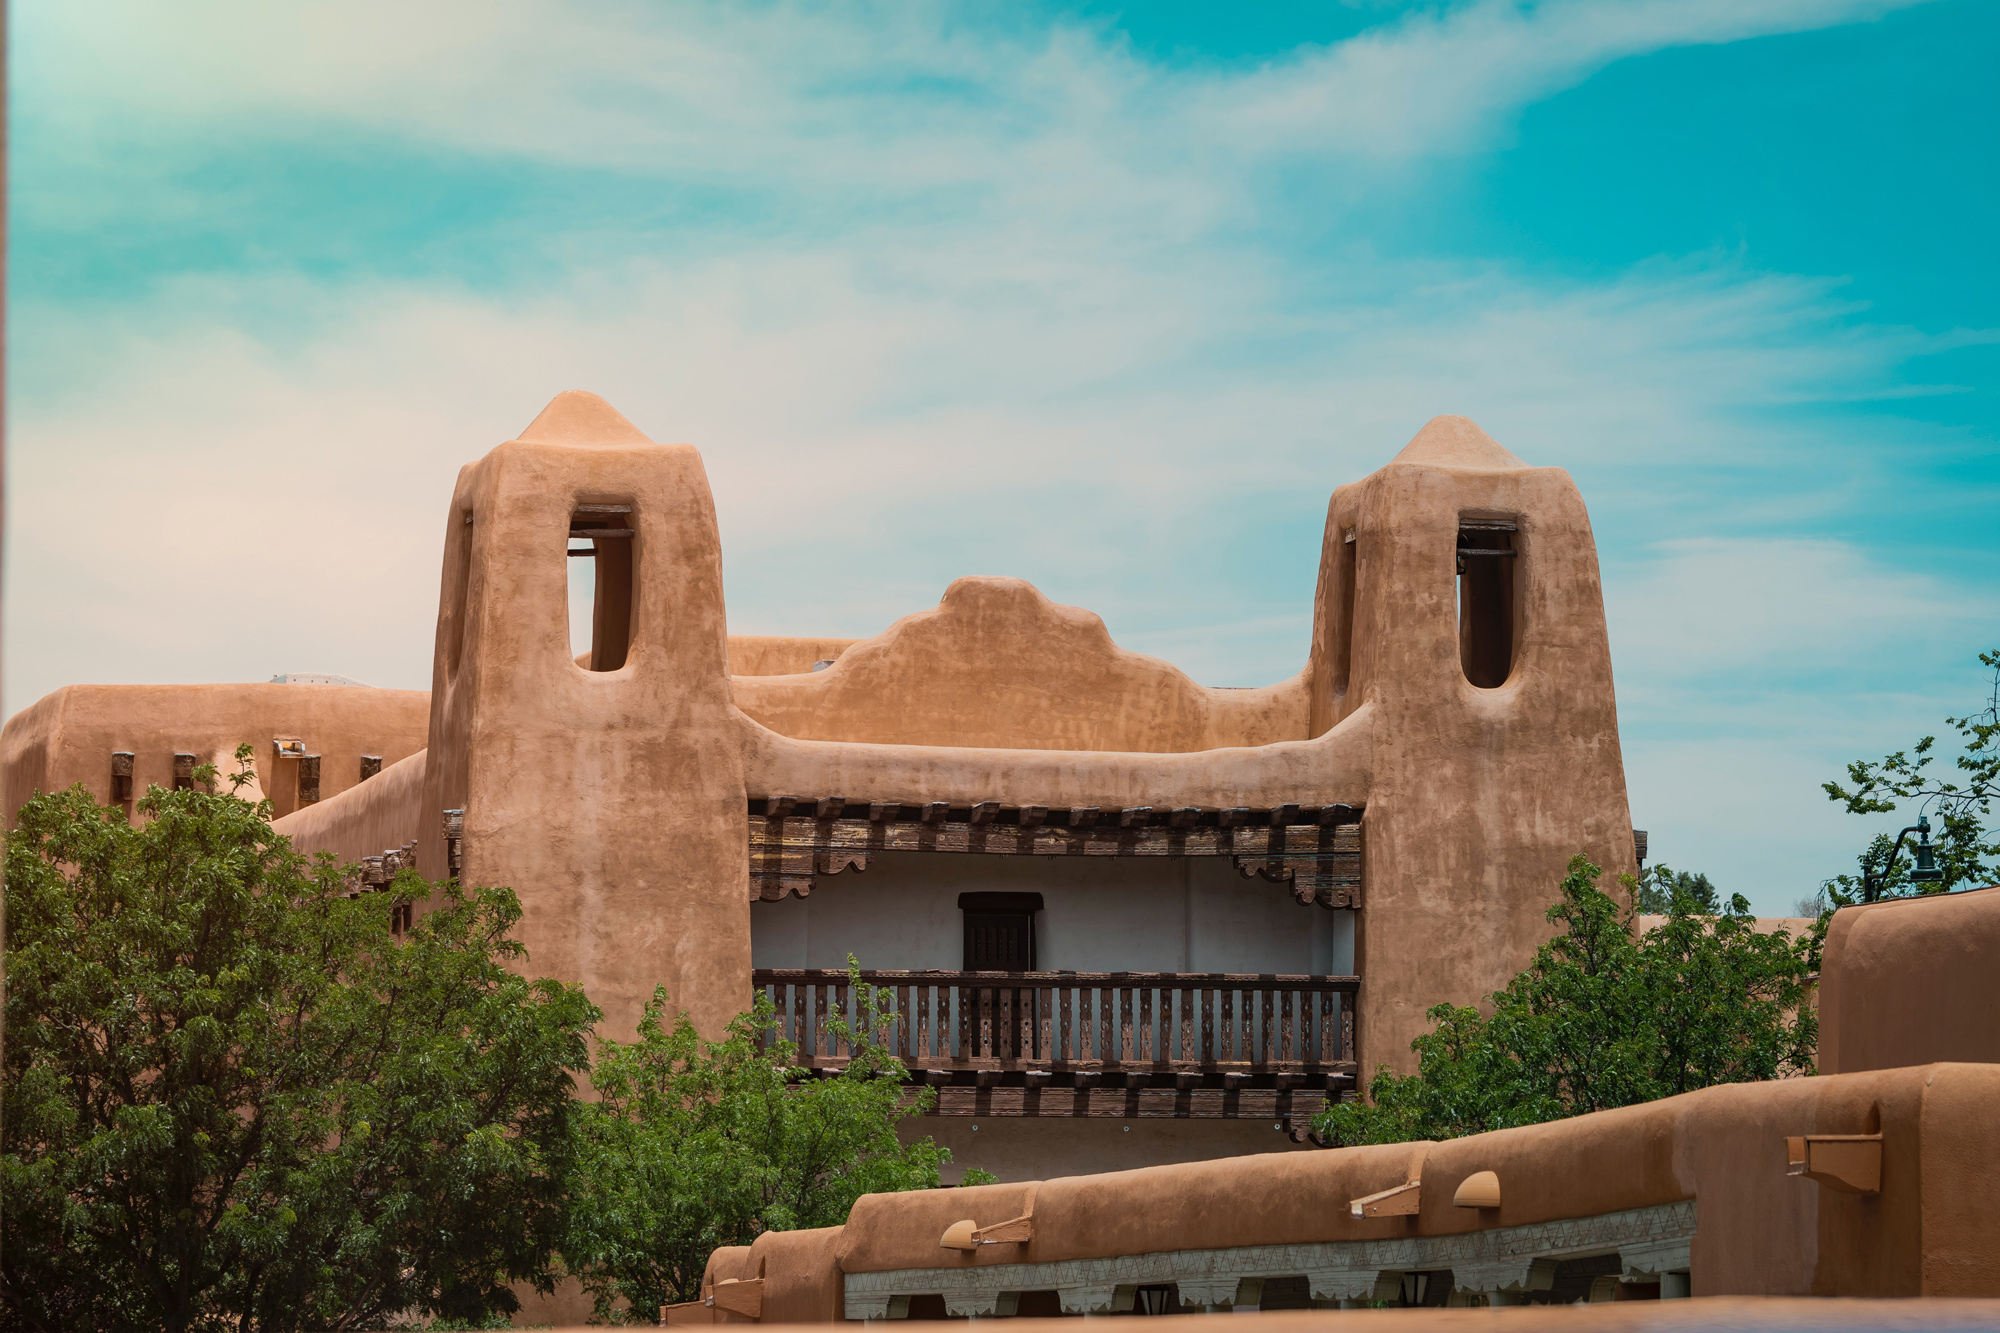 Adobe architecture, Santa Fe, New Mexico